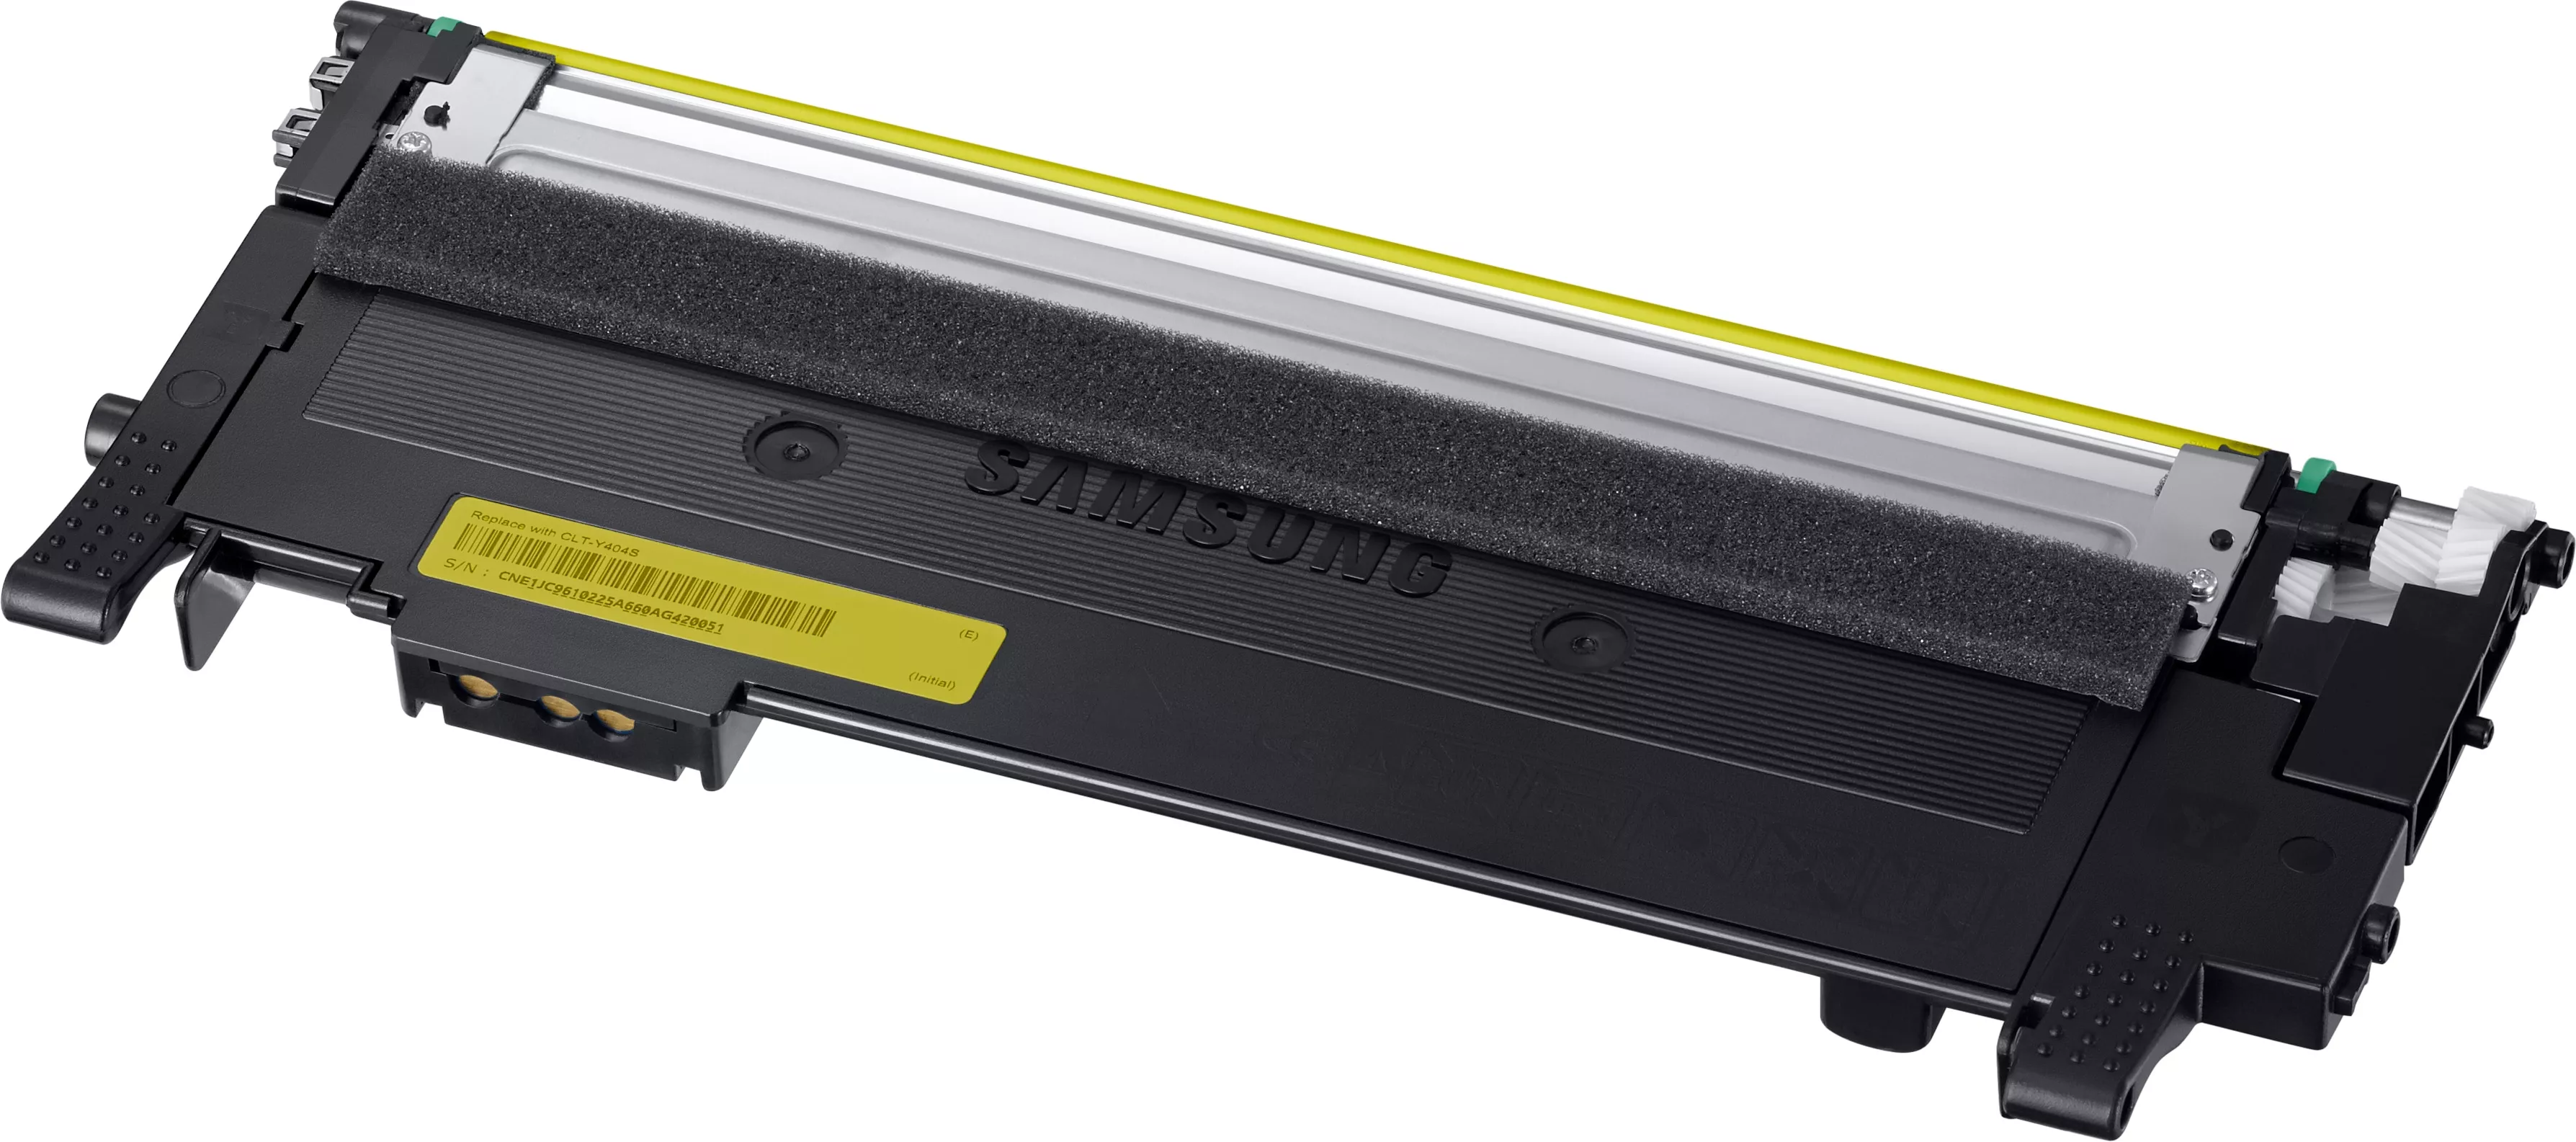 Achat SAMSUNG original Toner cartridge LT-Y404S/ELS Yellow au meilleur prix